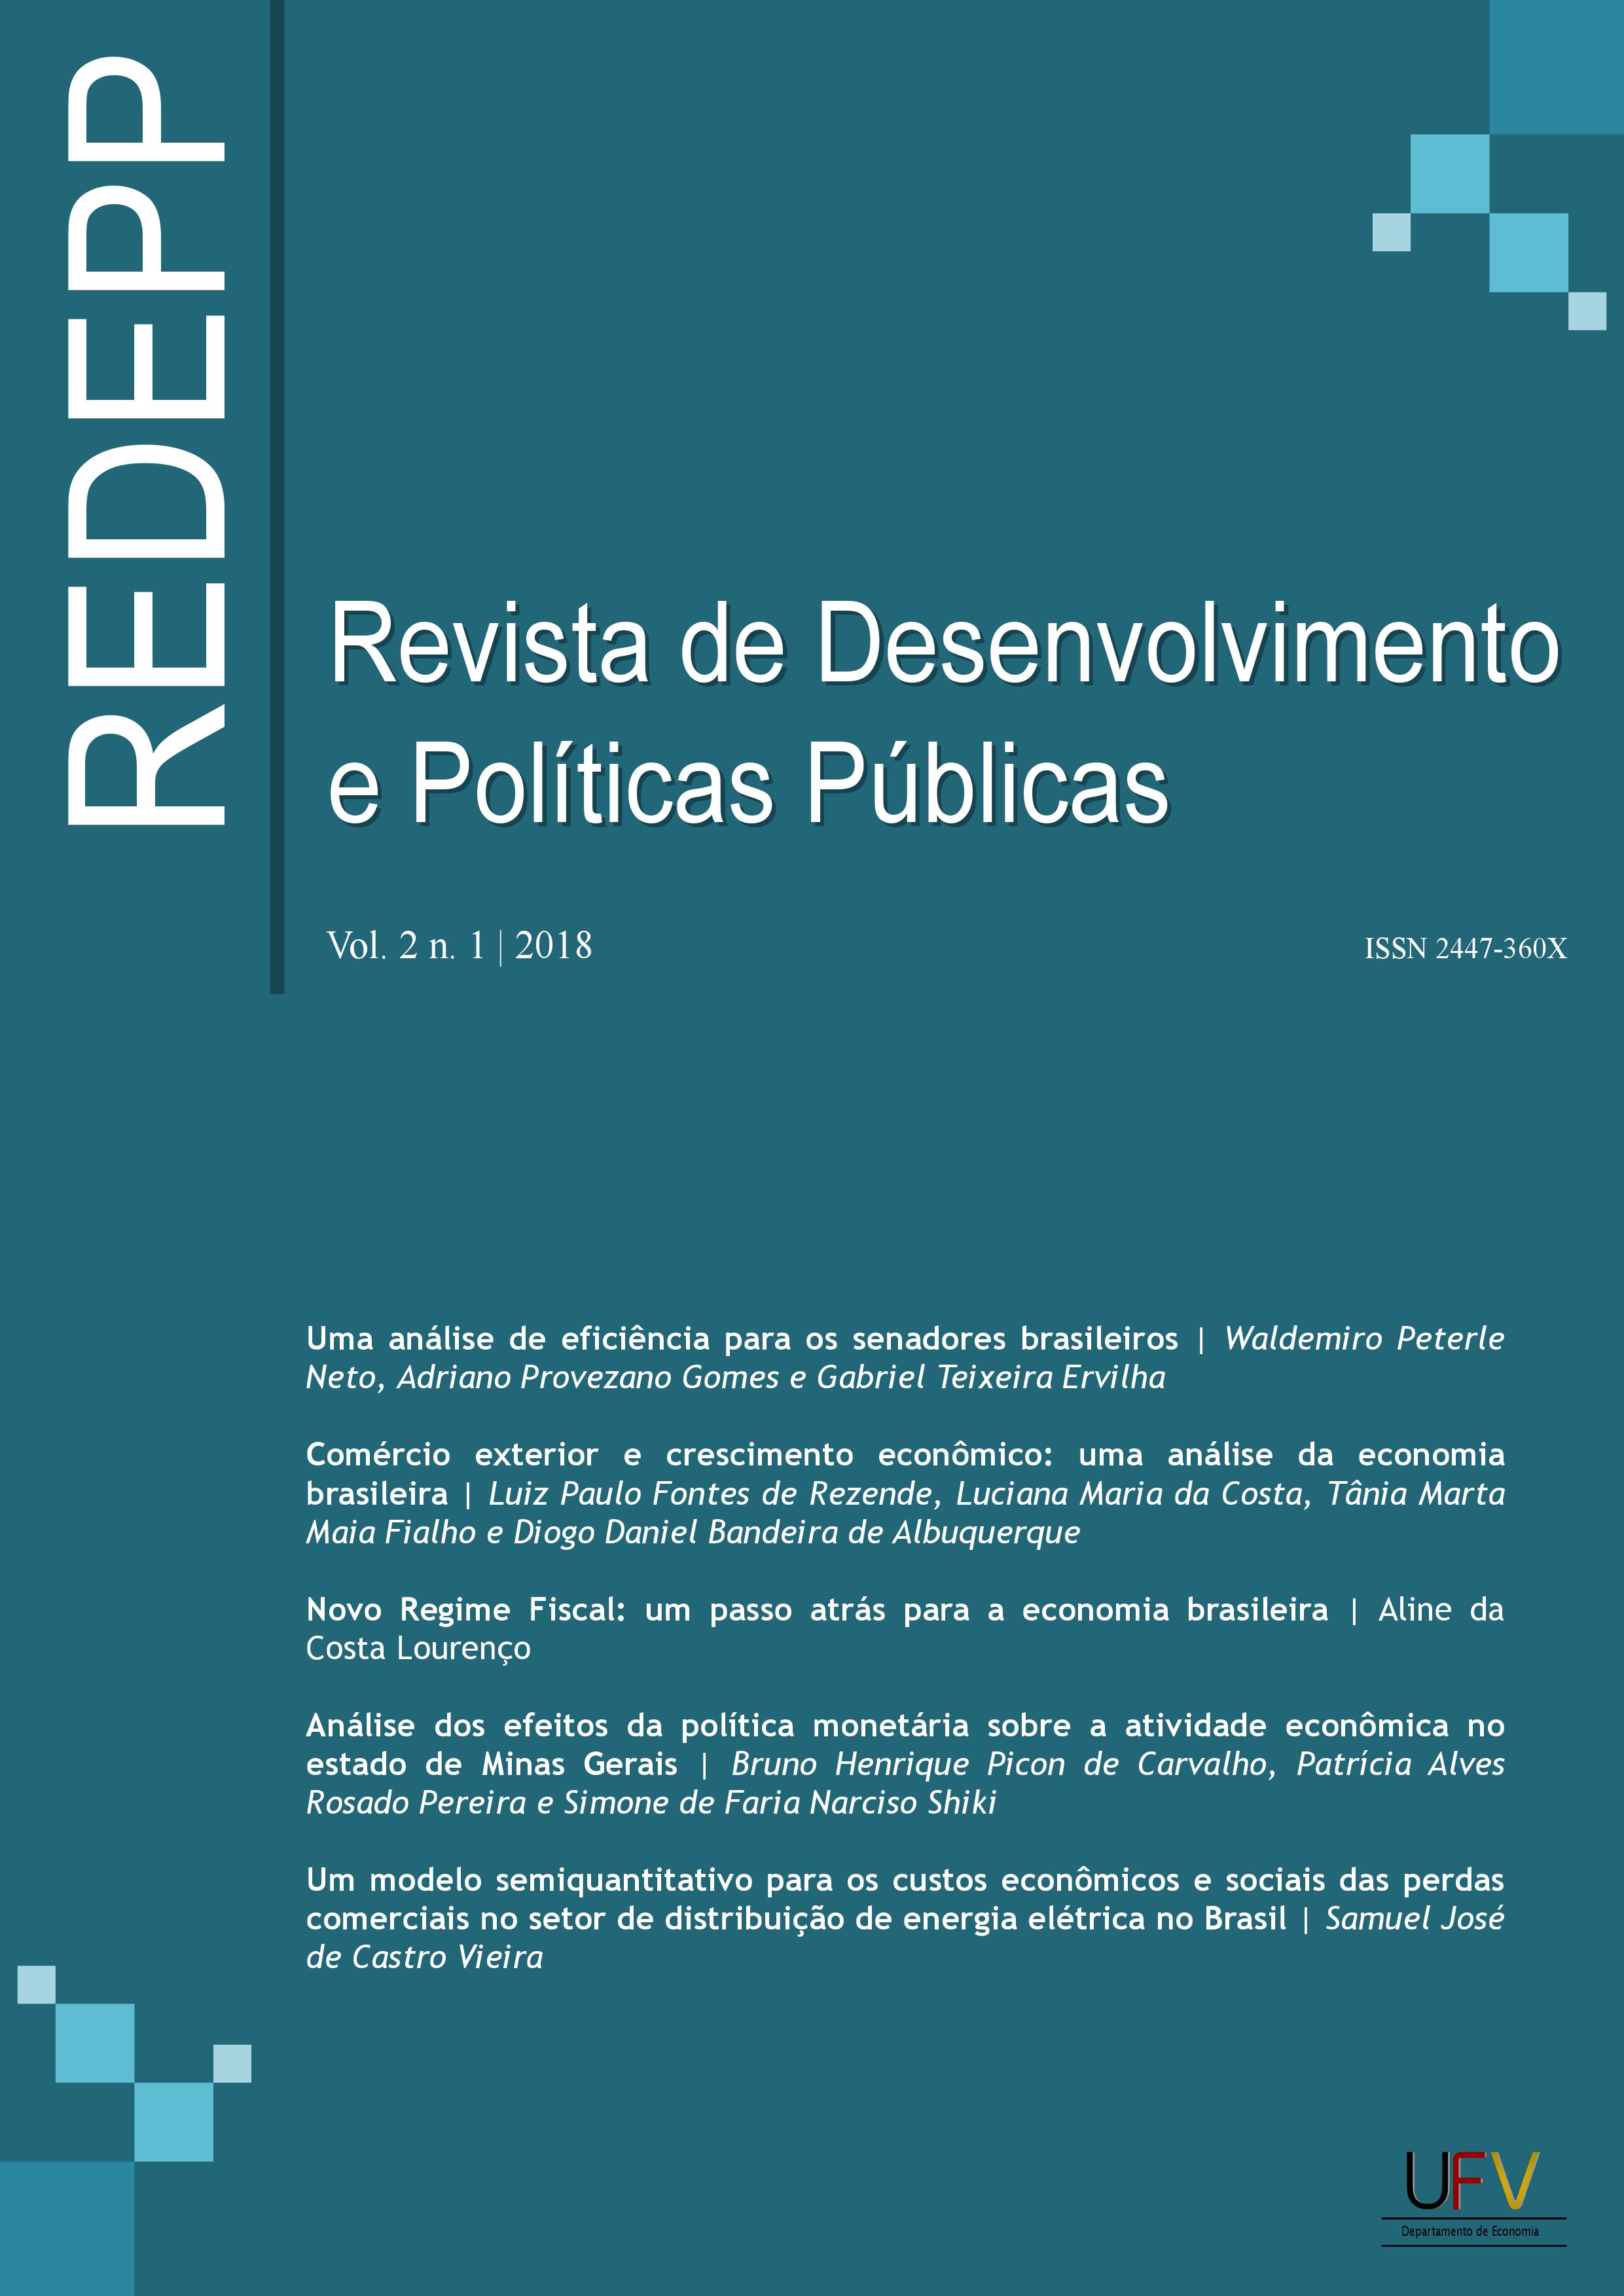 					Visualizar v. 2 n. 1 (2018): Revista de Desenvolvimento e Políticas Públicas [ISSN: 2447-360X]
				